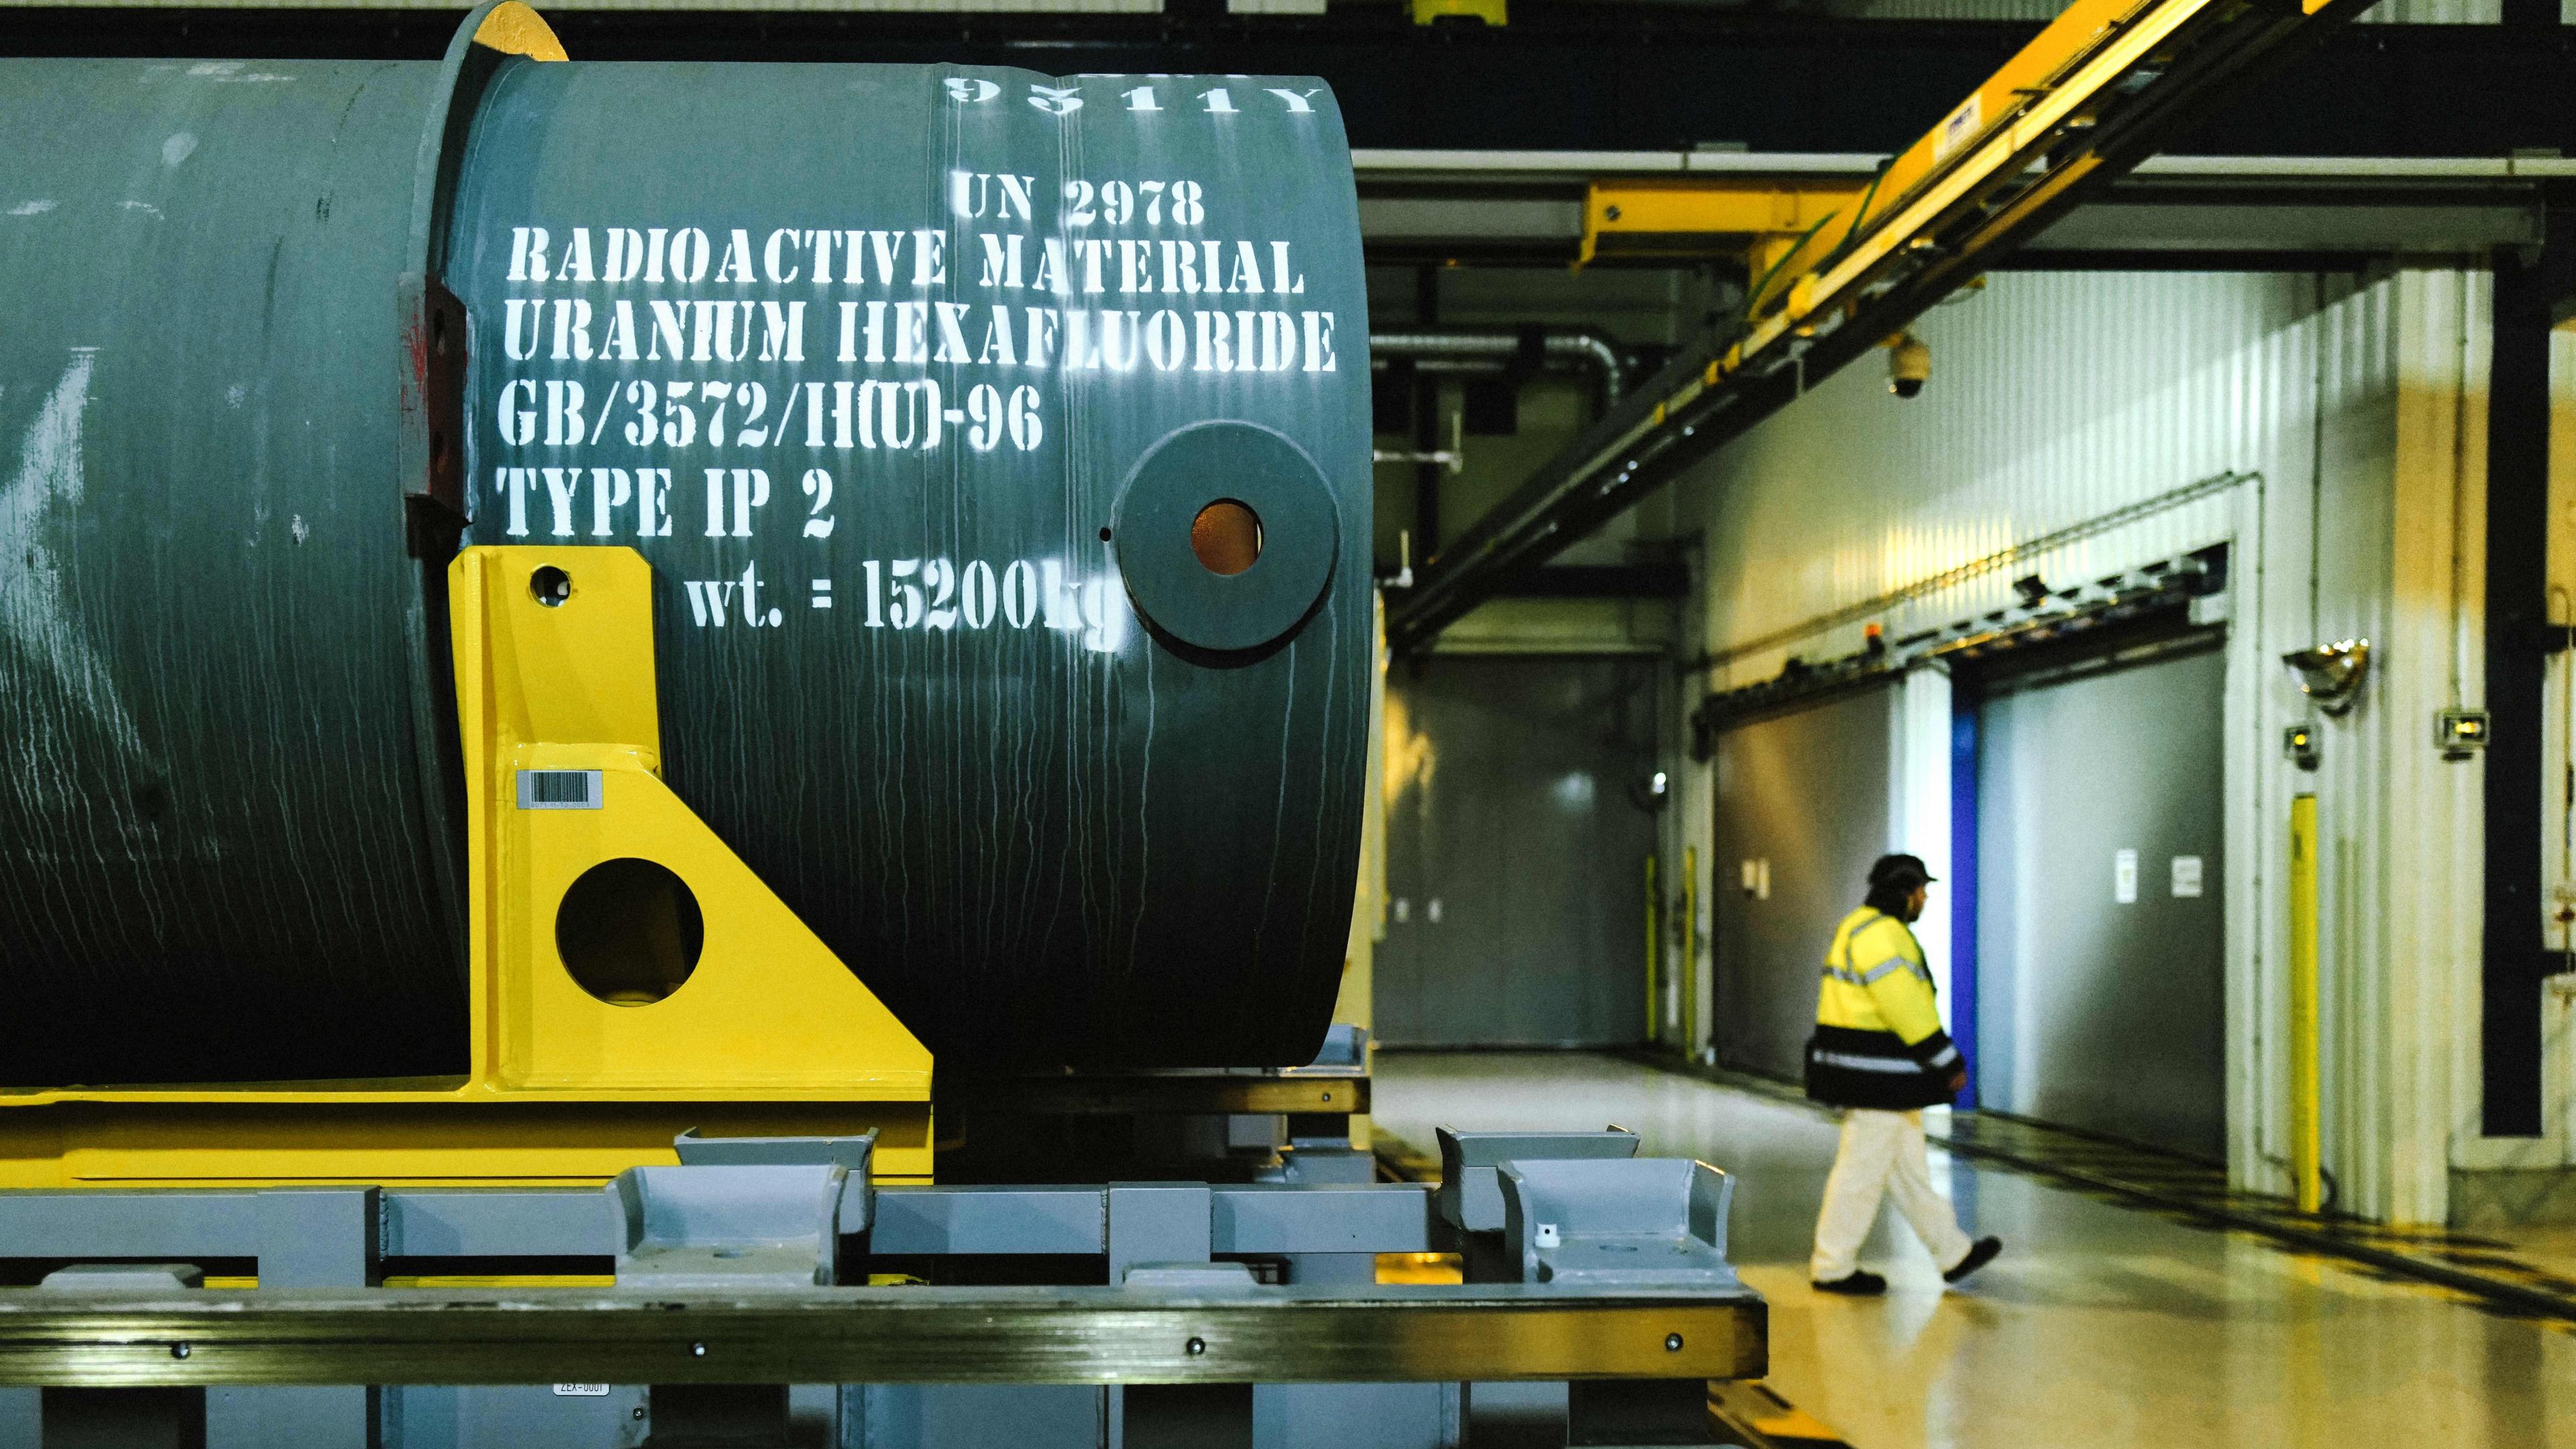 En fransk anläggning för anrikning av uran. Mannen som nu åtalas ska ha erbjudit sig att hjälpa till att byta uran och plutonium mot vapen. Foto: Olivier Chassignole/AFP via Getty Images